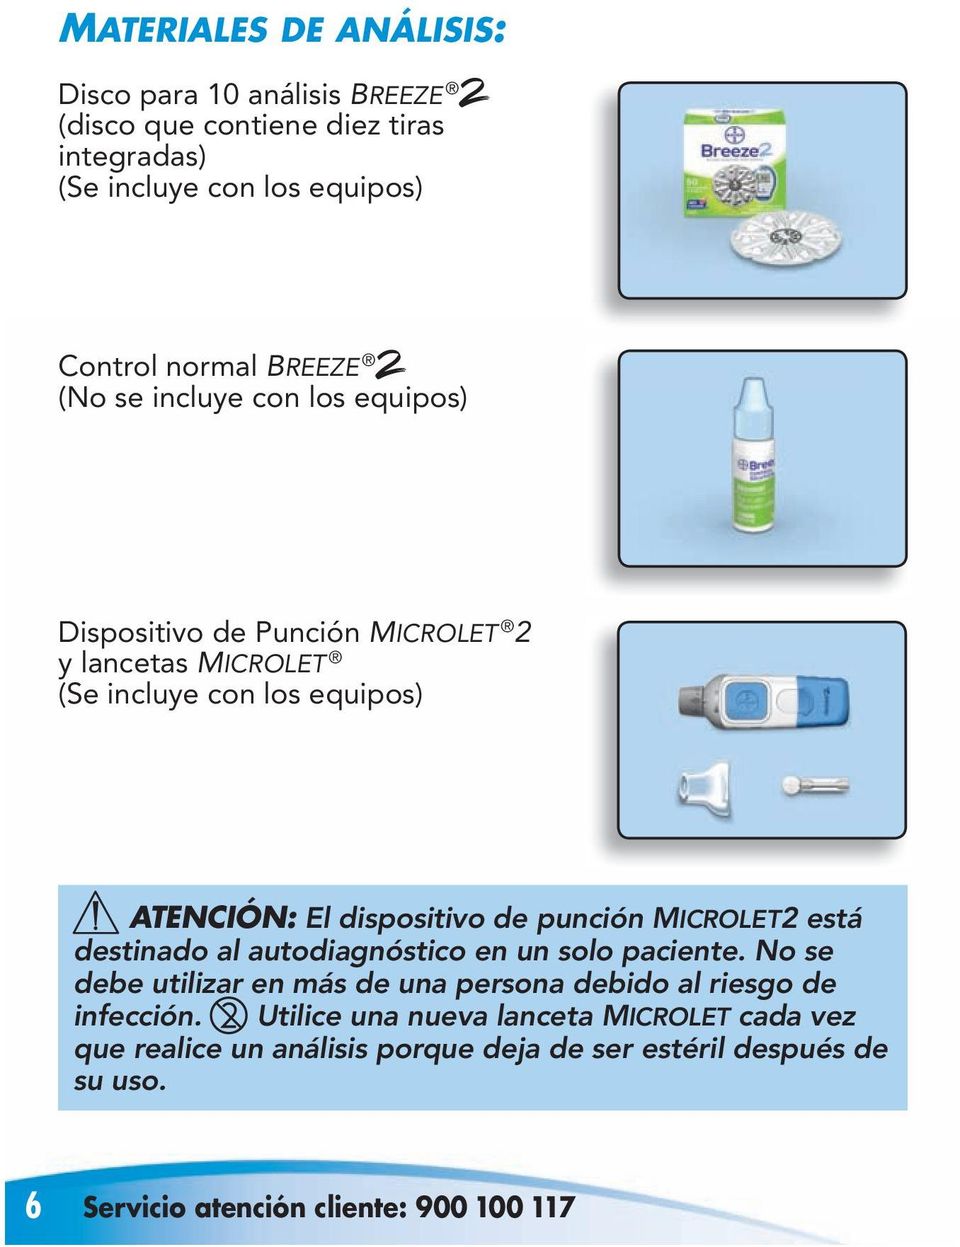 punción MICROLET2 está destinado al autodiagnóstico en un solo paciente. No se debe utilizar en más de una persona debido al riesgo de infección.